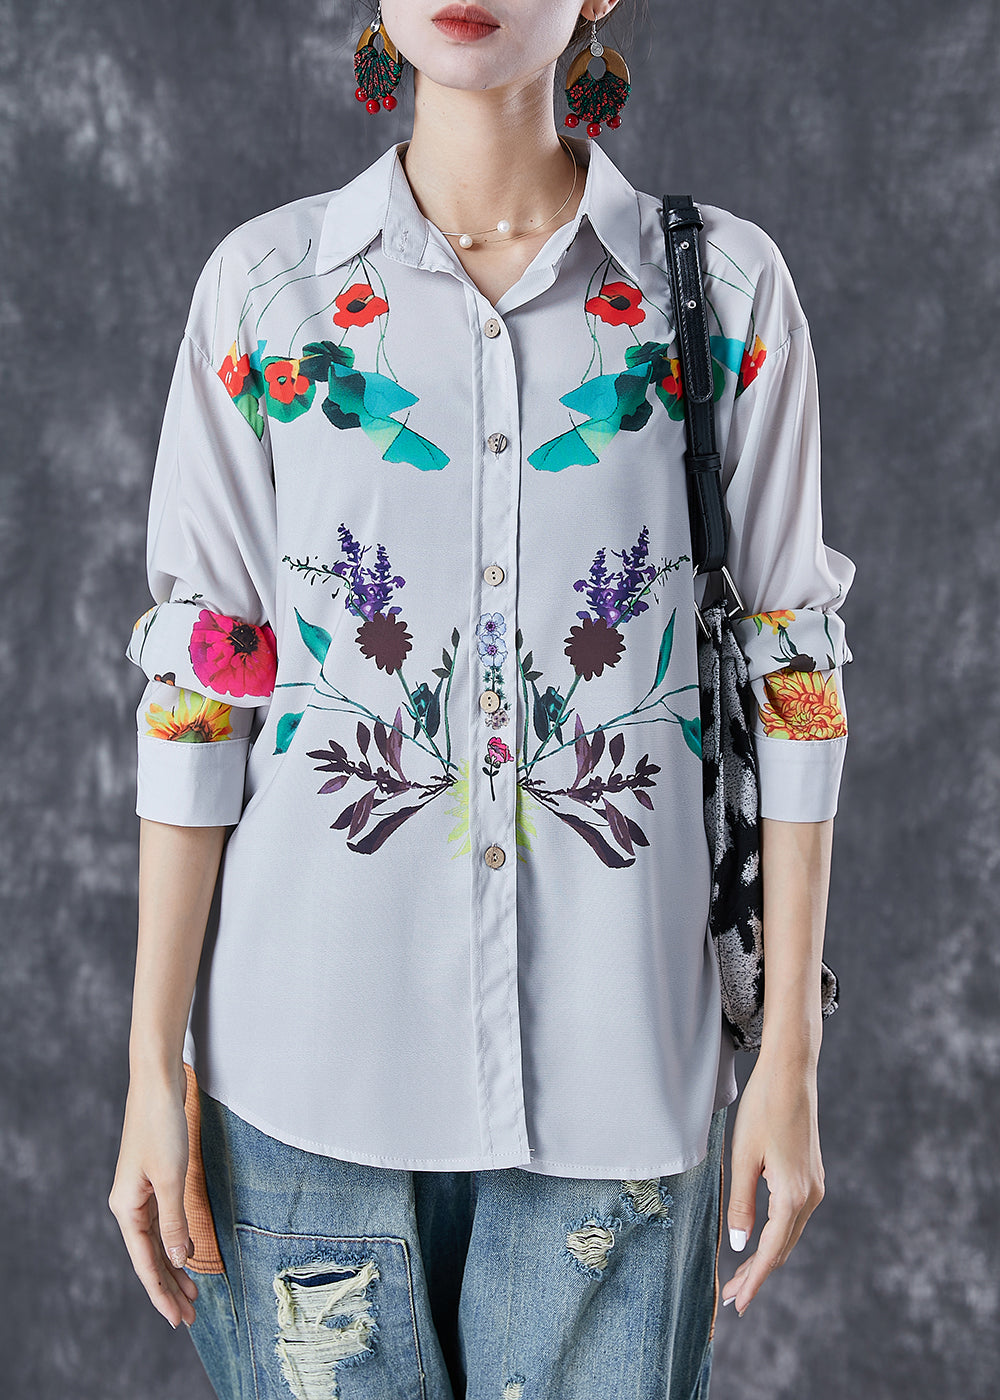 Classy Light Grey Peter Pan Collar Print Cotton Shirt Top Fall LY6768 - fabuloryshop